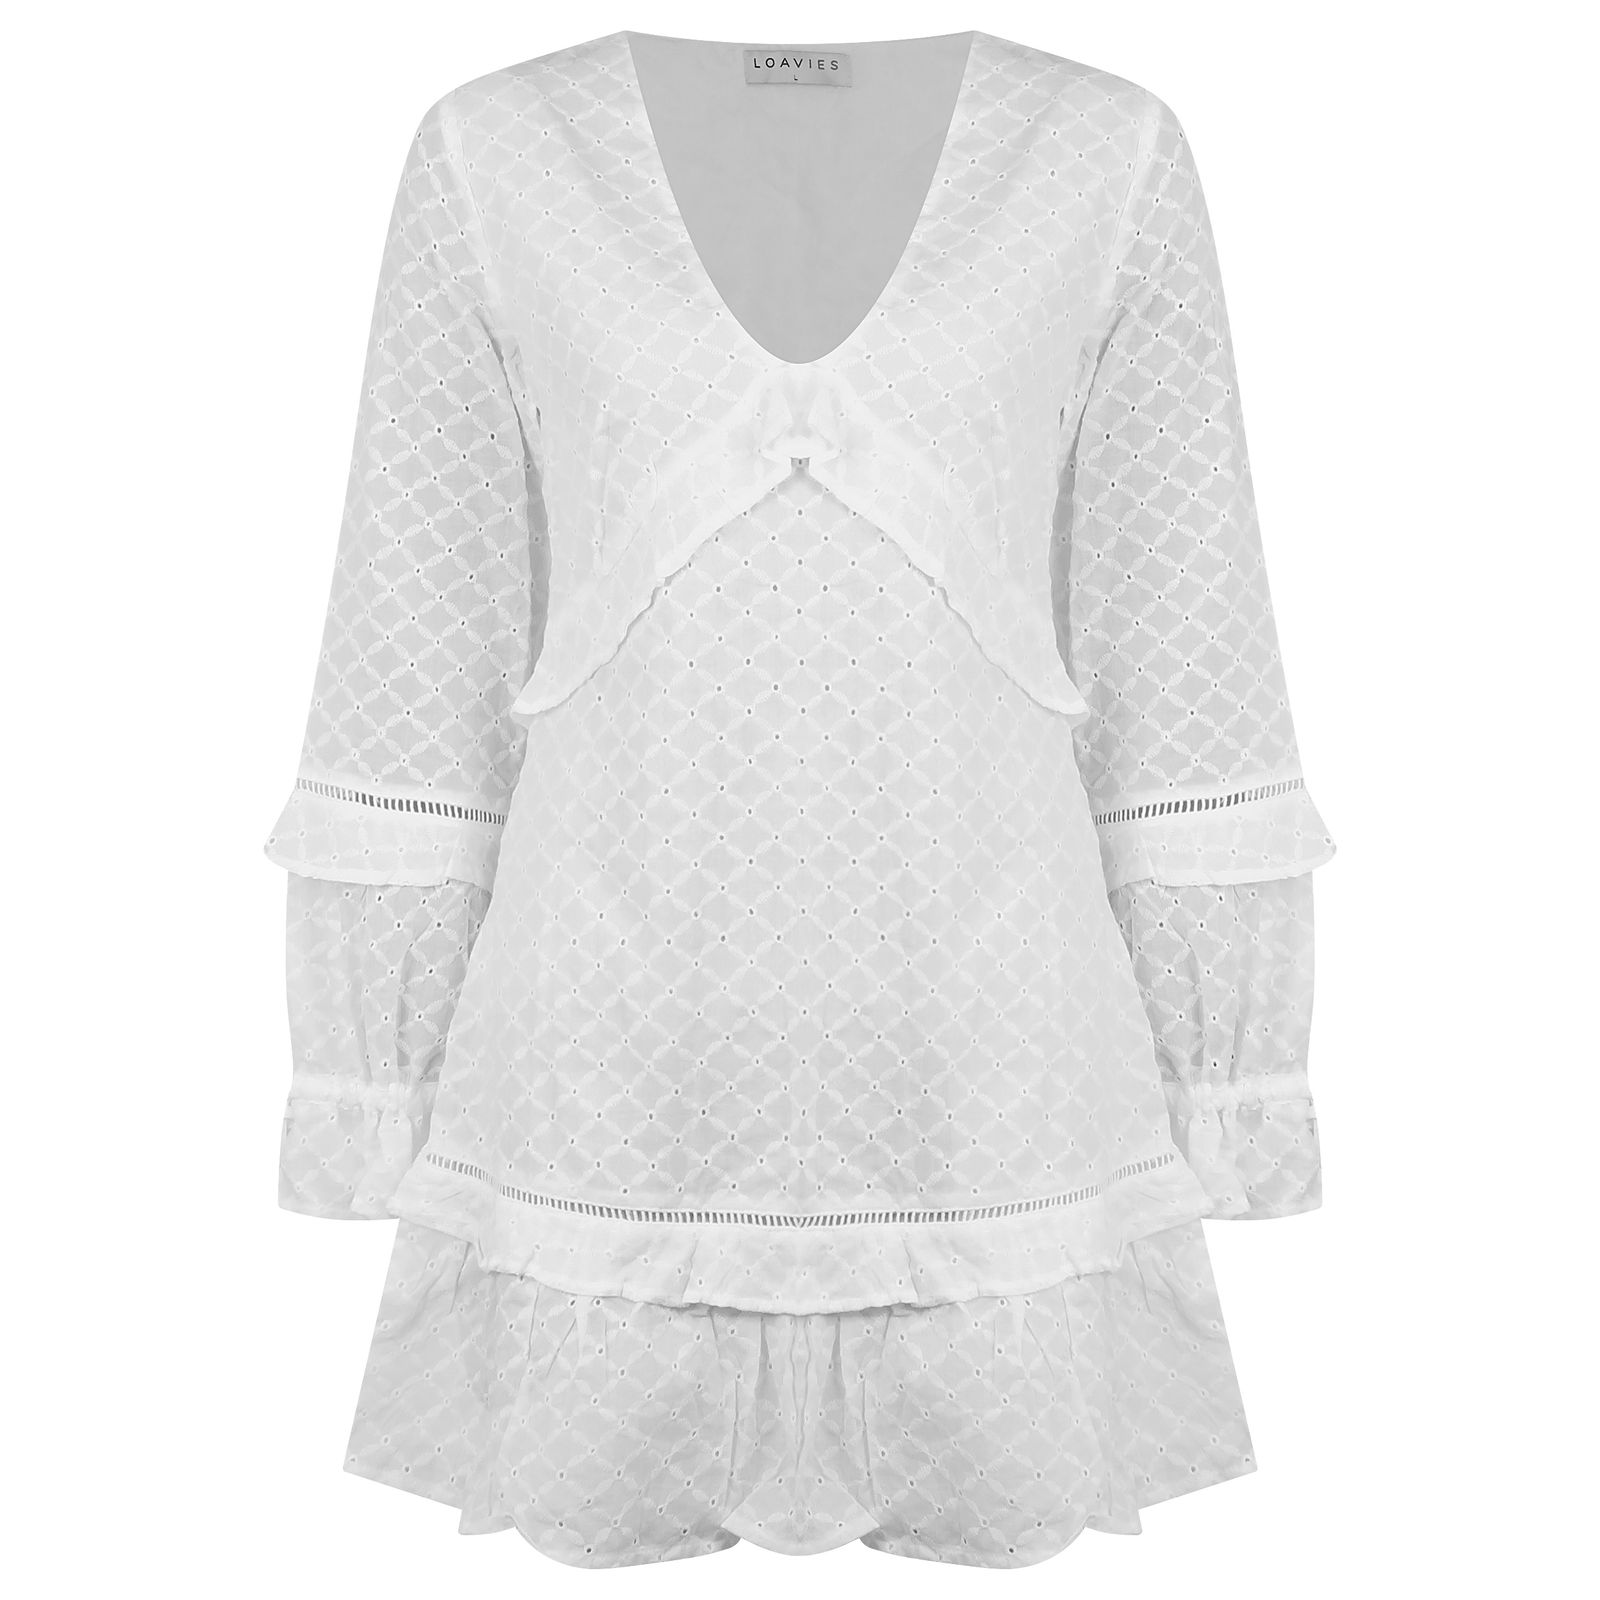 پیراهن زنانه لوییز مدل خامه دوزی RSH-LOAV83186 -  - 1